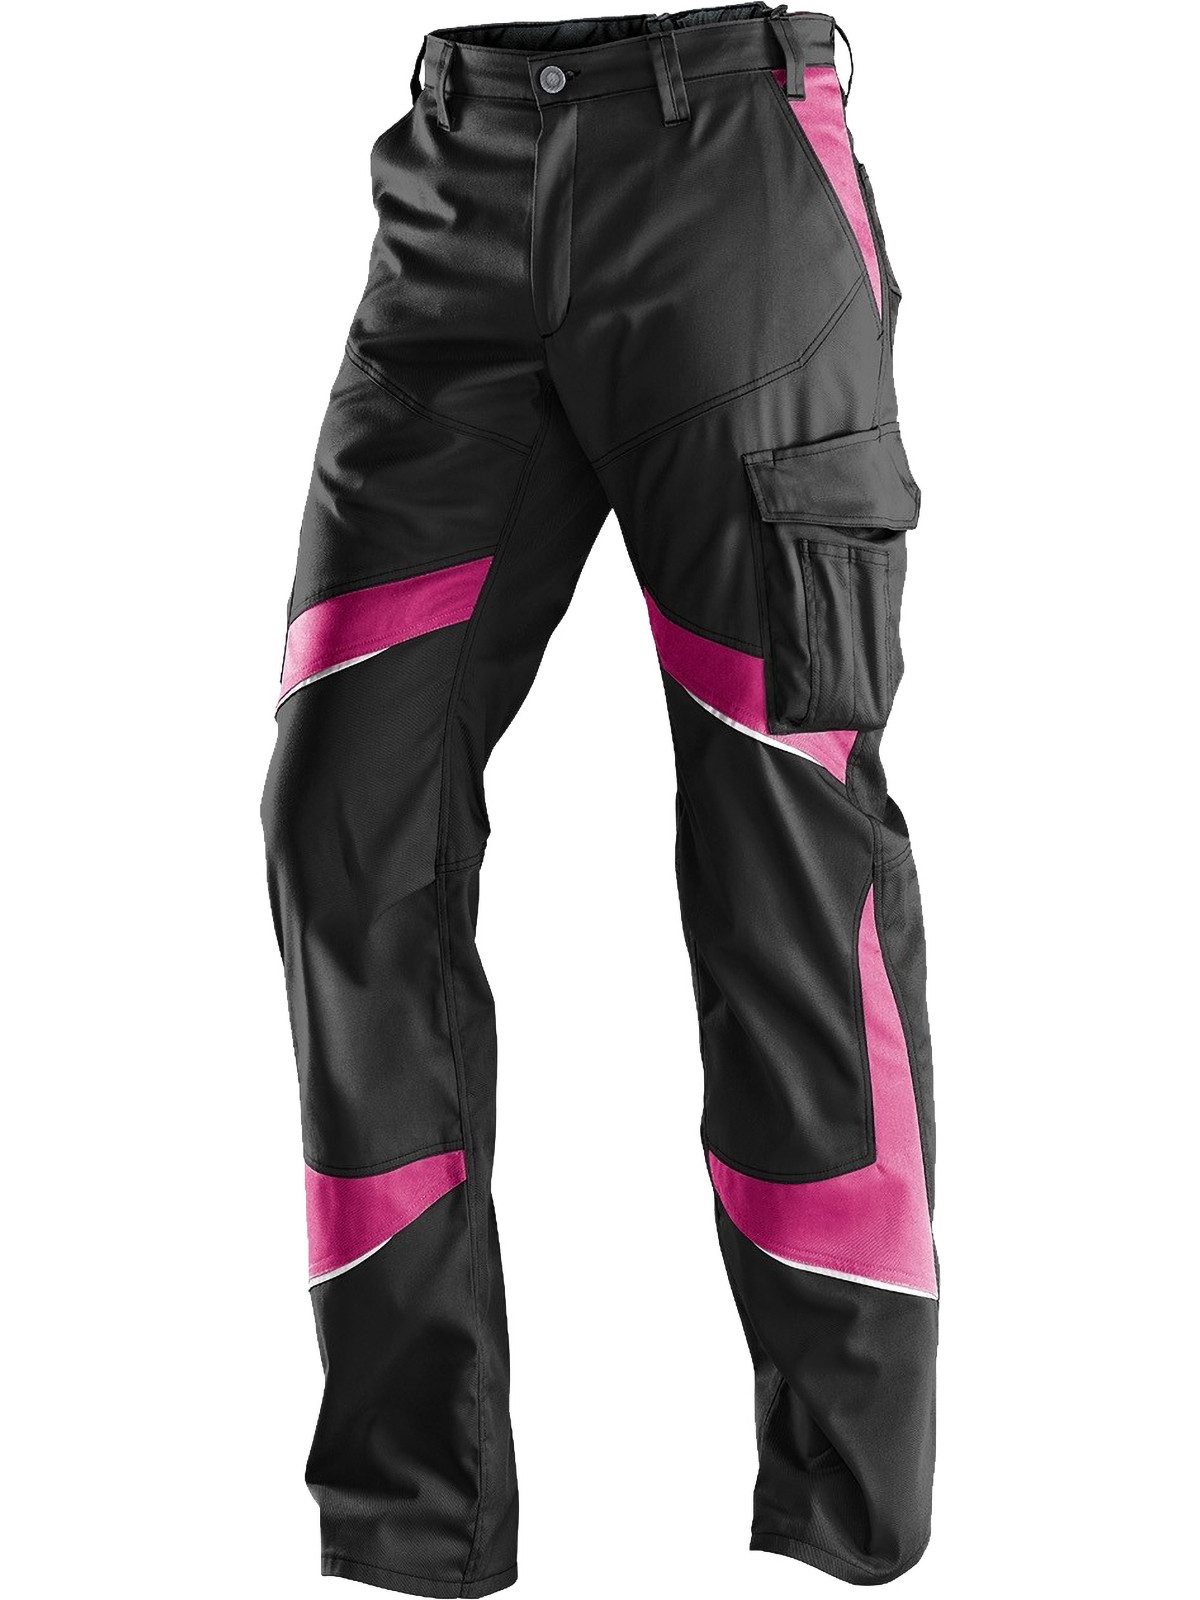 Kübler Arbeitshose Damenbundhose schwarz/ pink